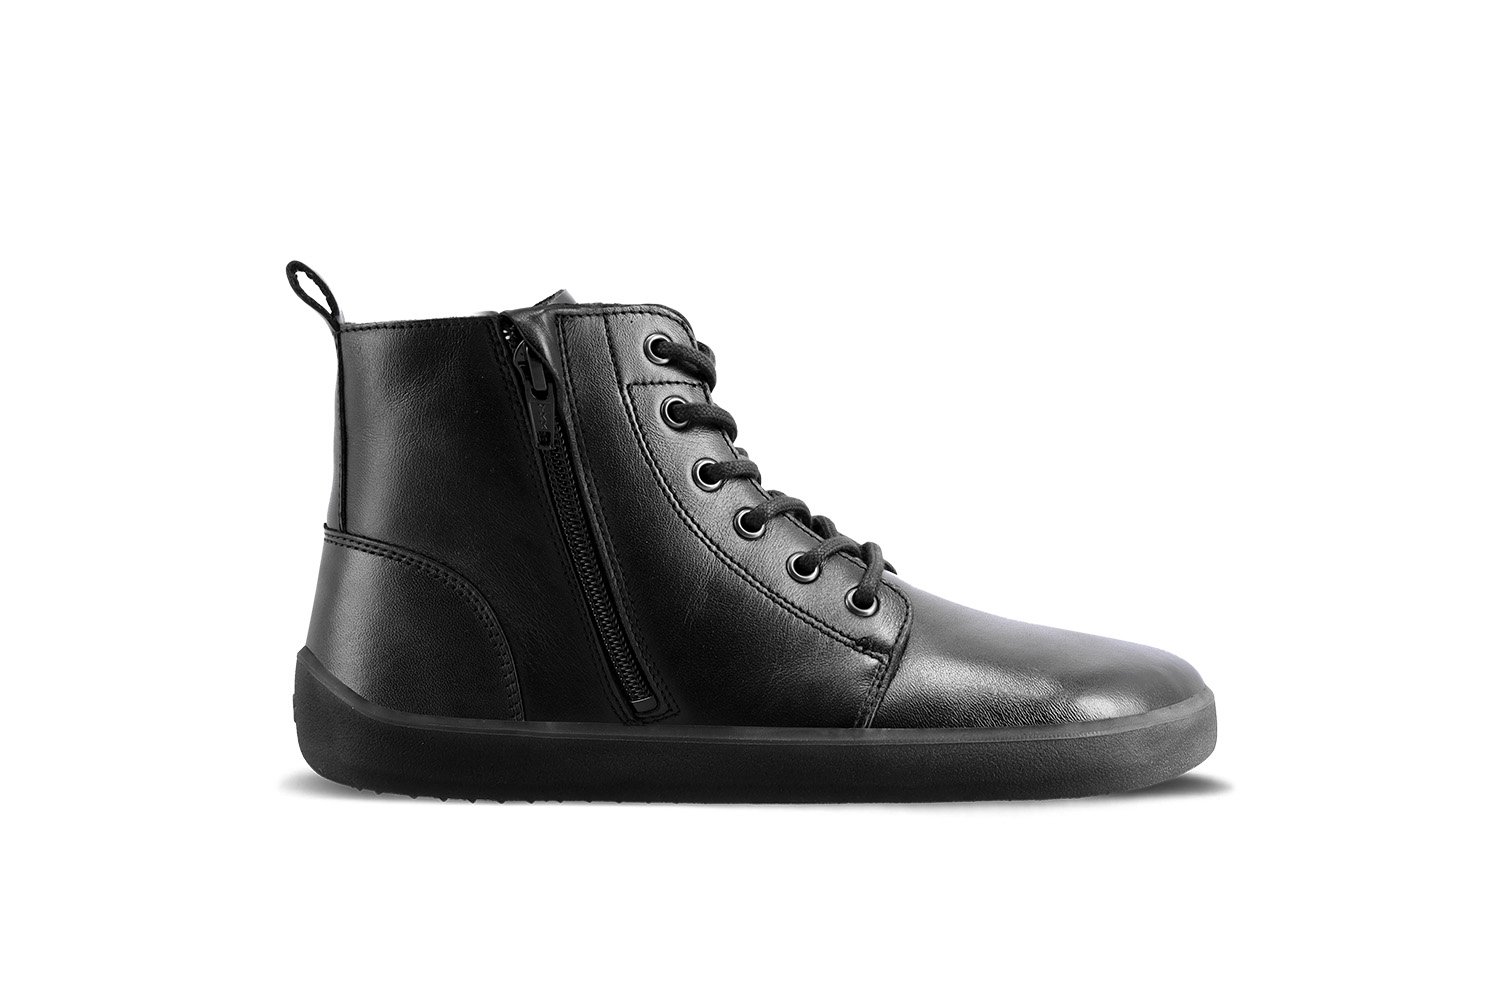 Barefoot Shoes Be Lenka Atlas - All Black | Be Lenka